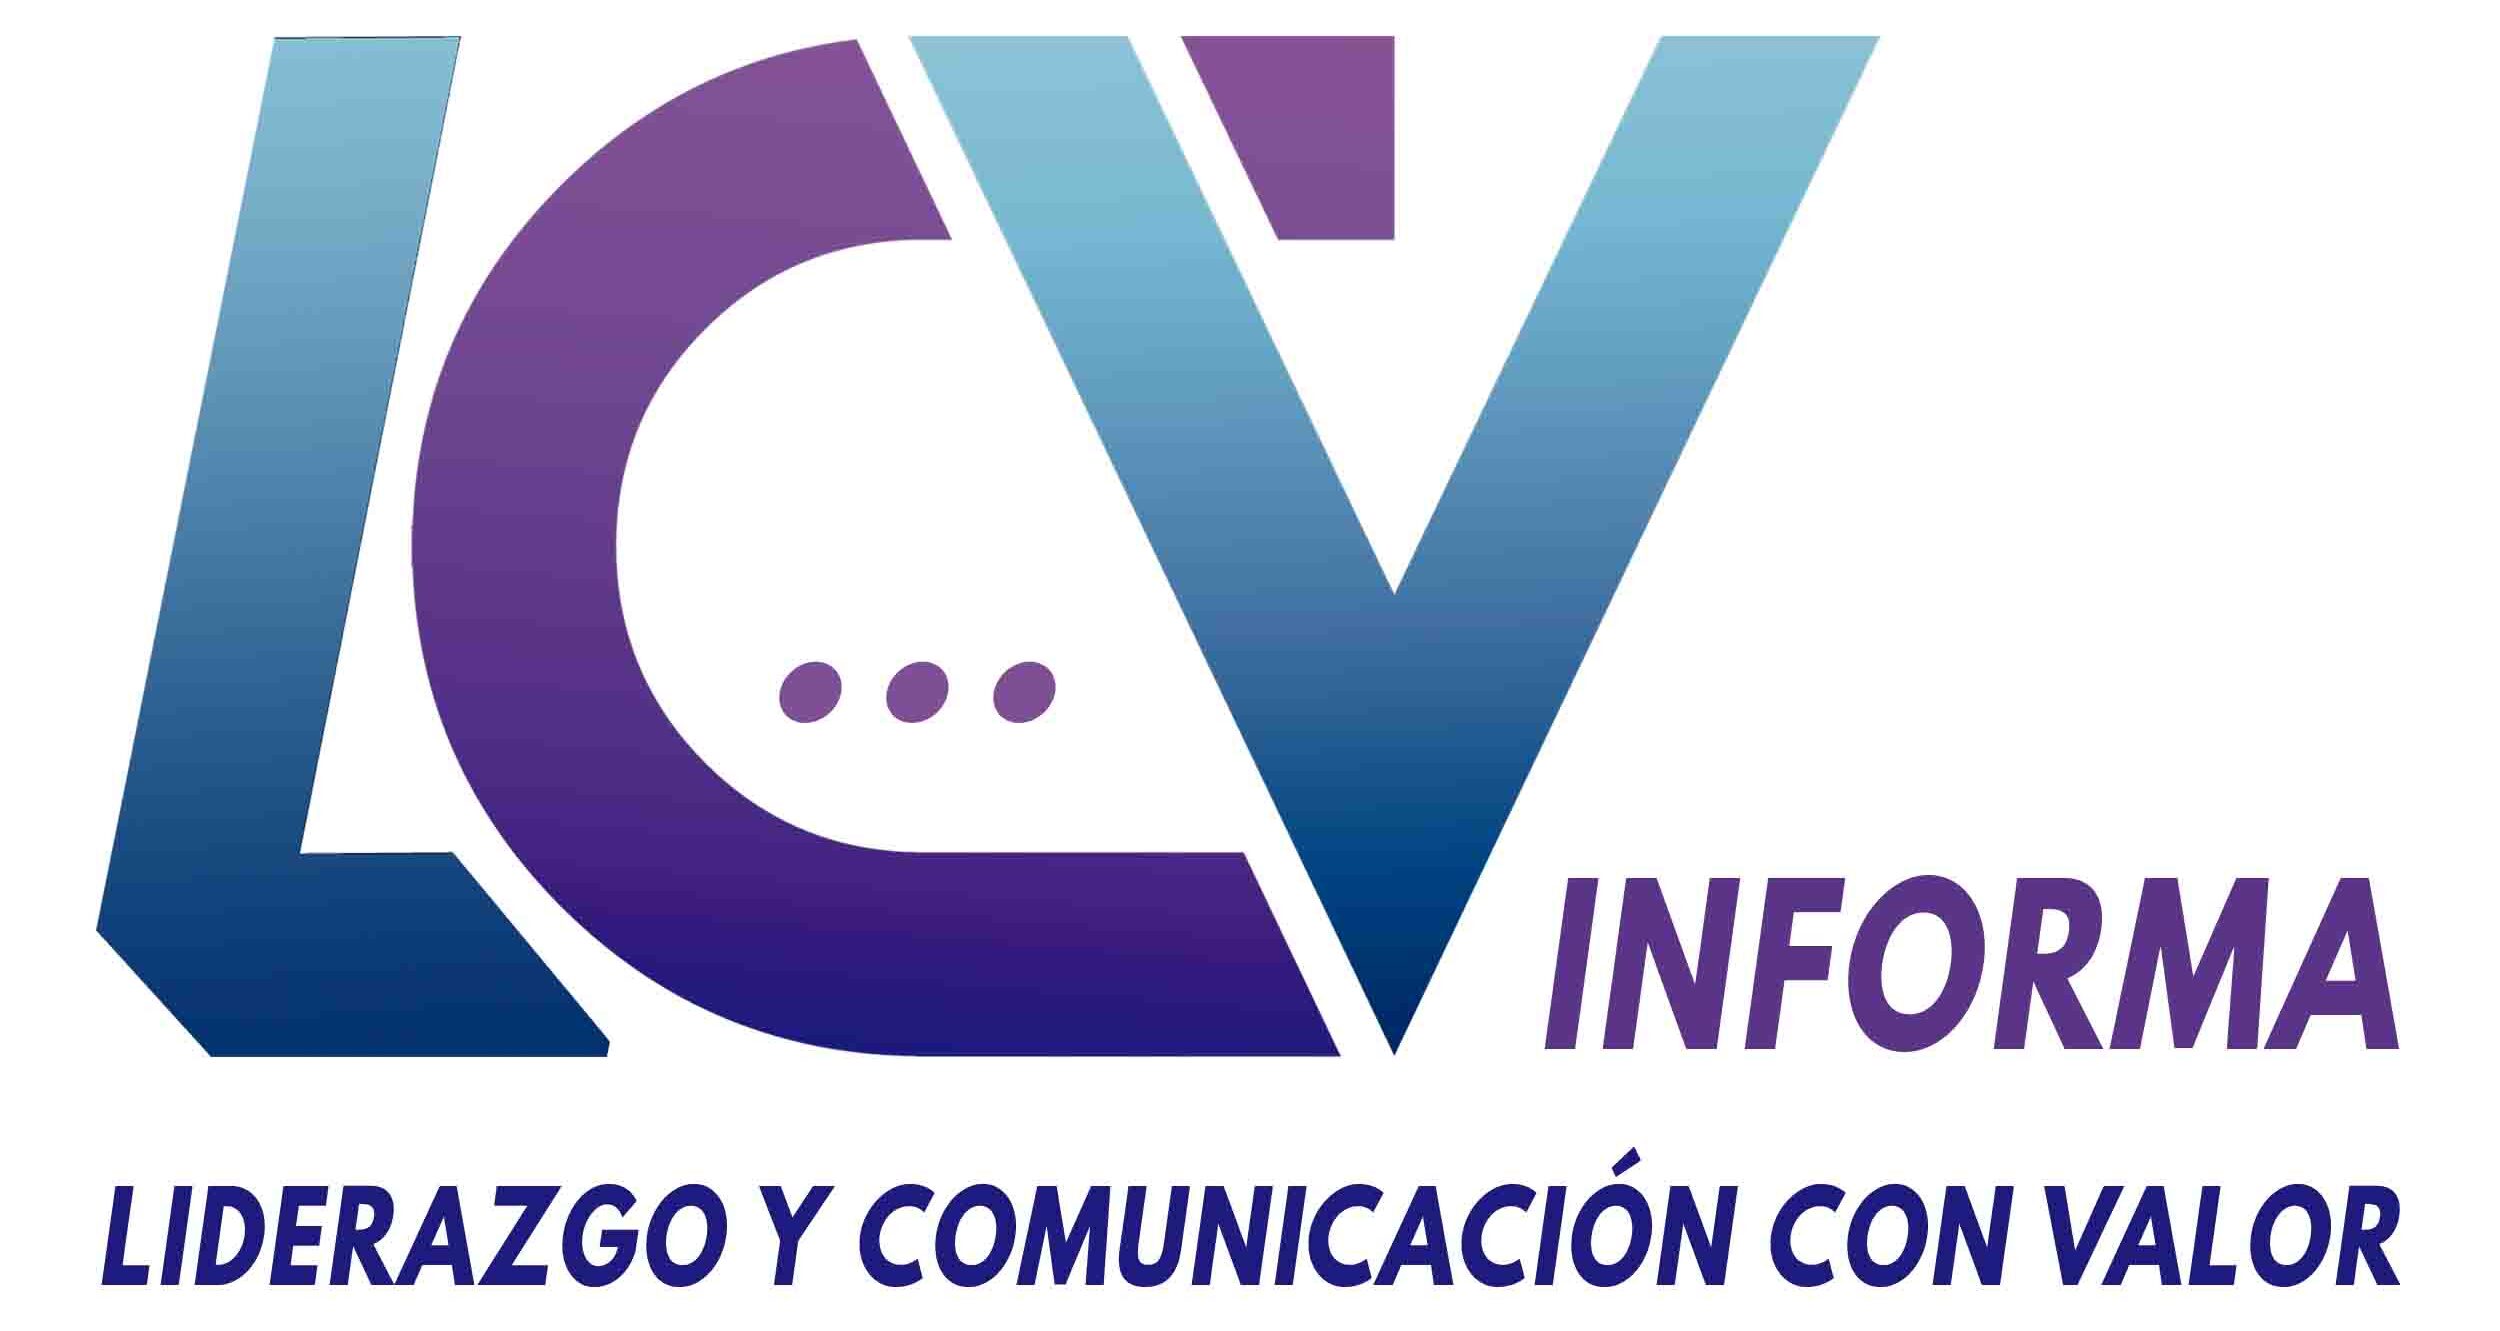 LCV Informa - Liderazgo y Comunicación con Valor